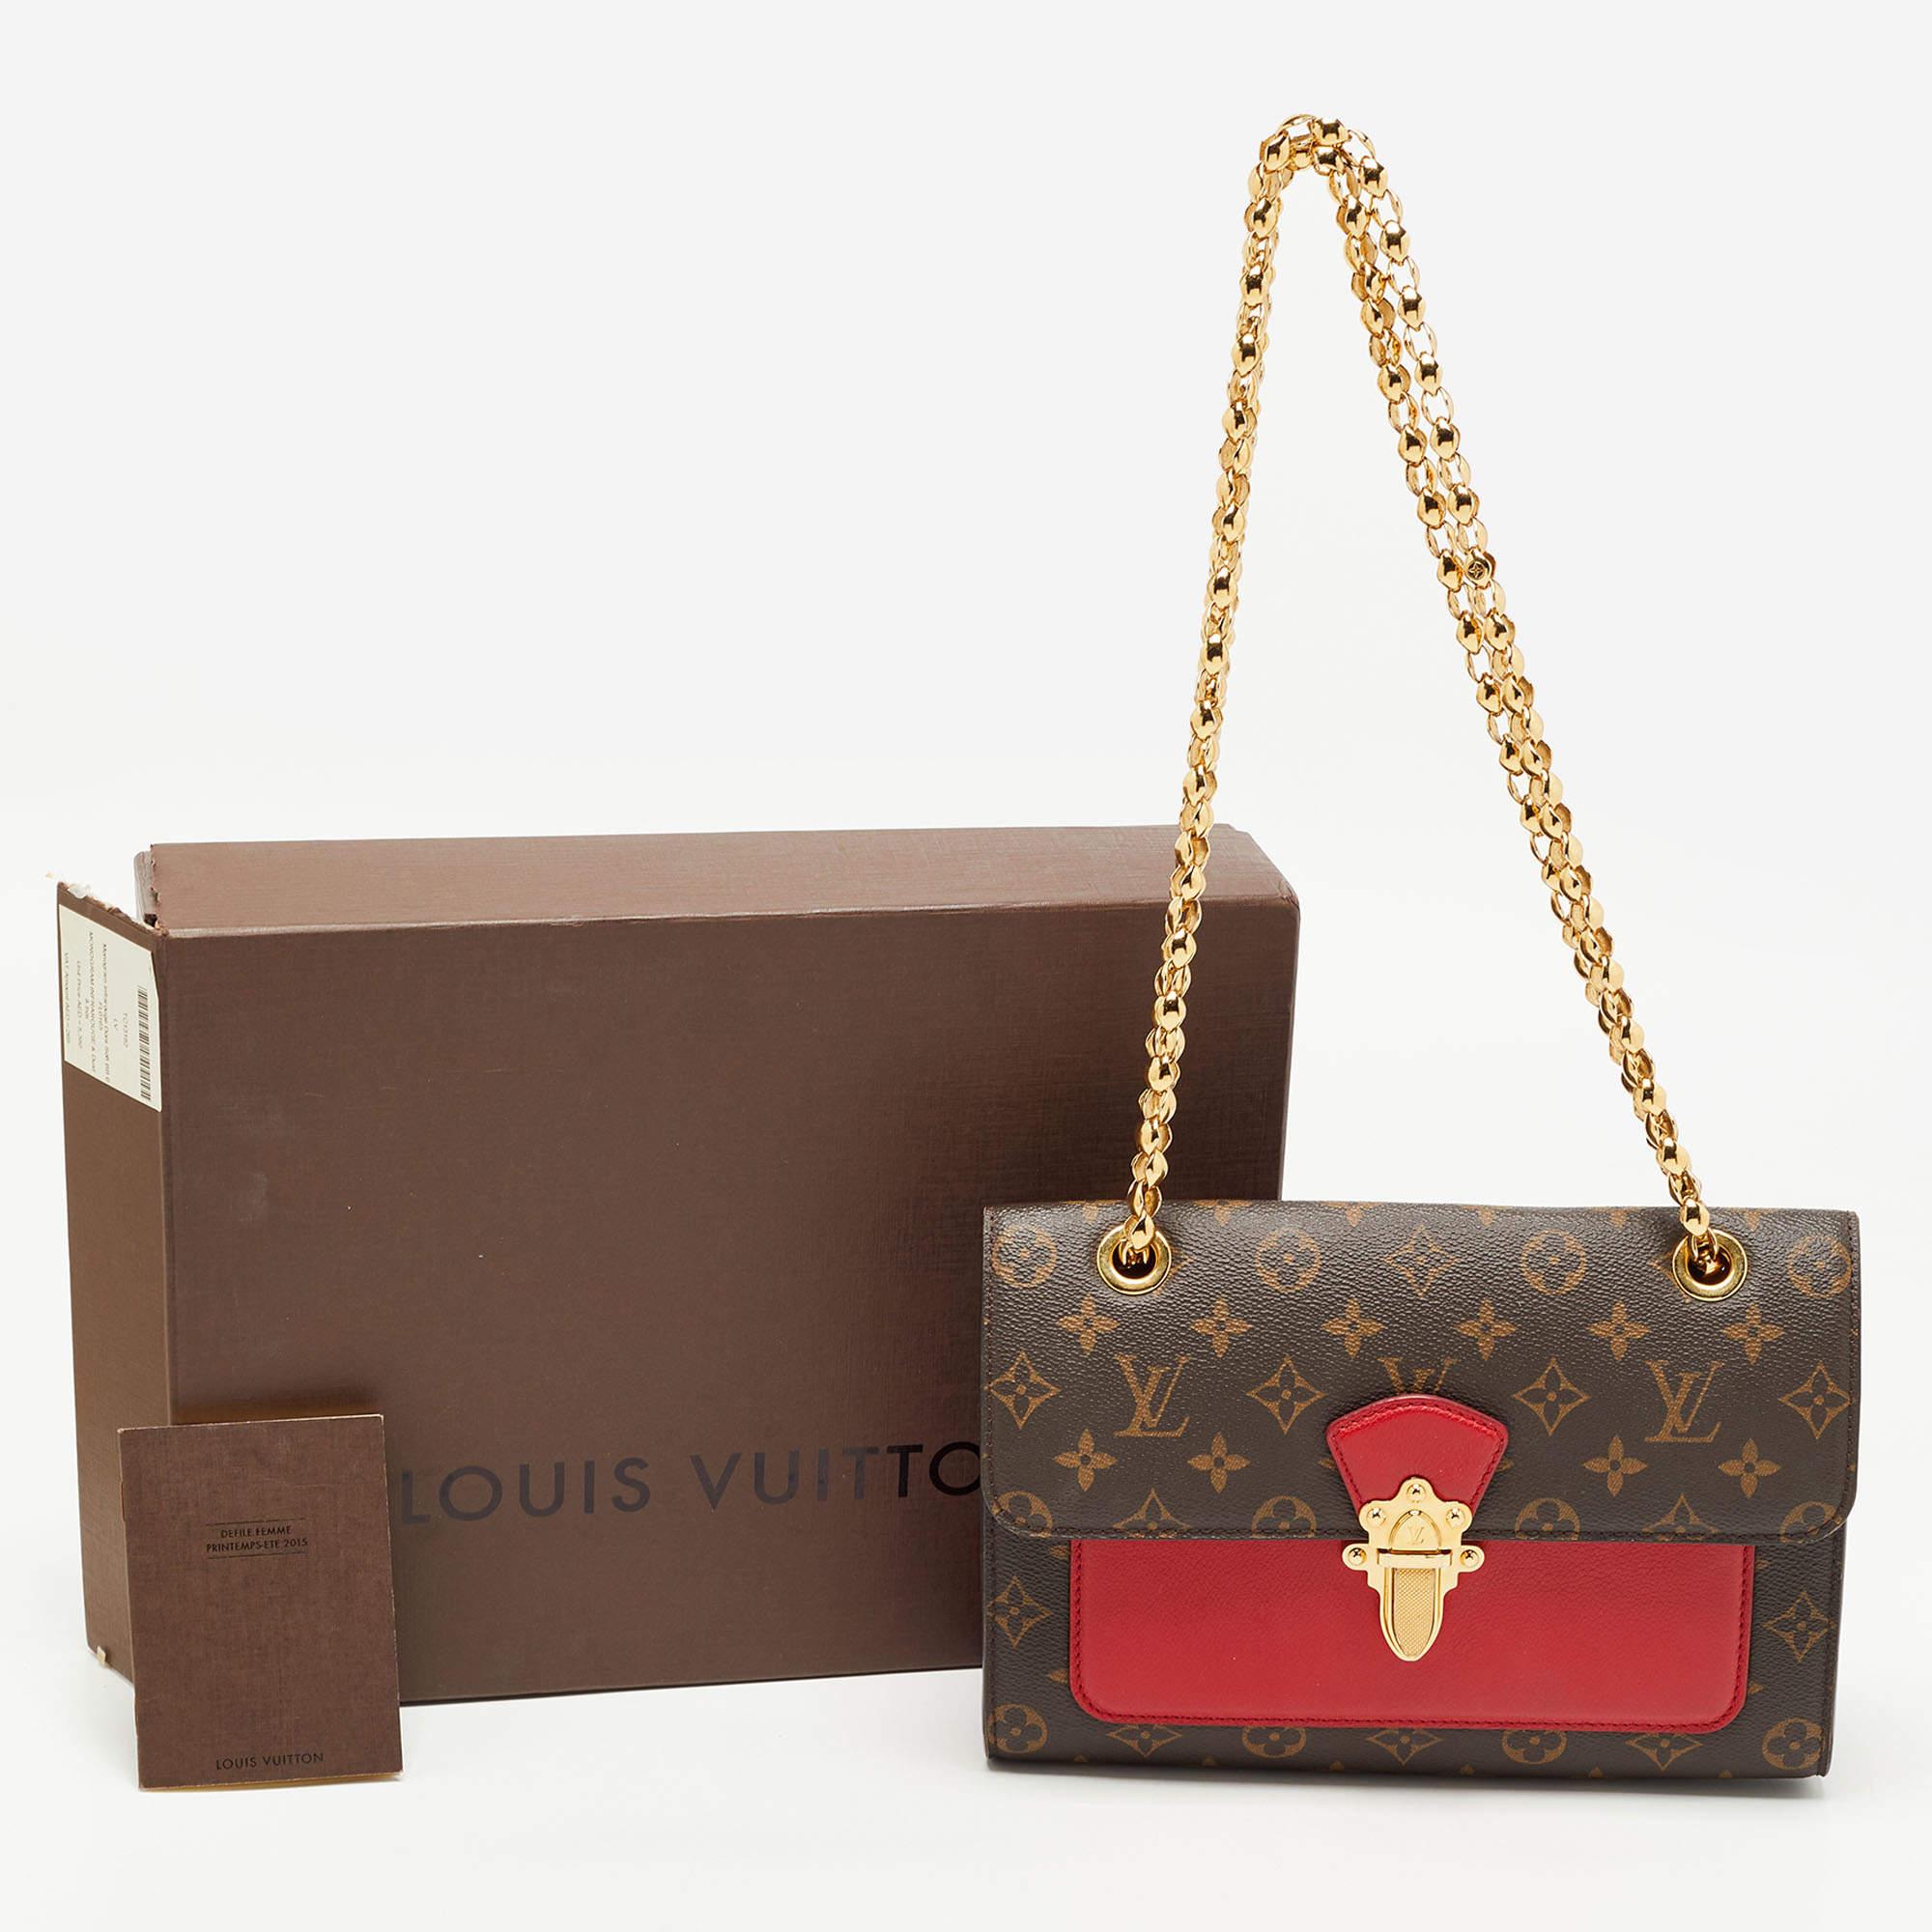 Louis Vuitton Cerise Monogram Canvas and Leather Victoire Bag 4